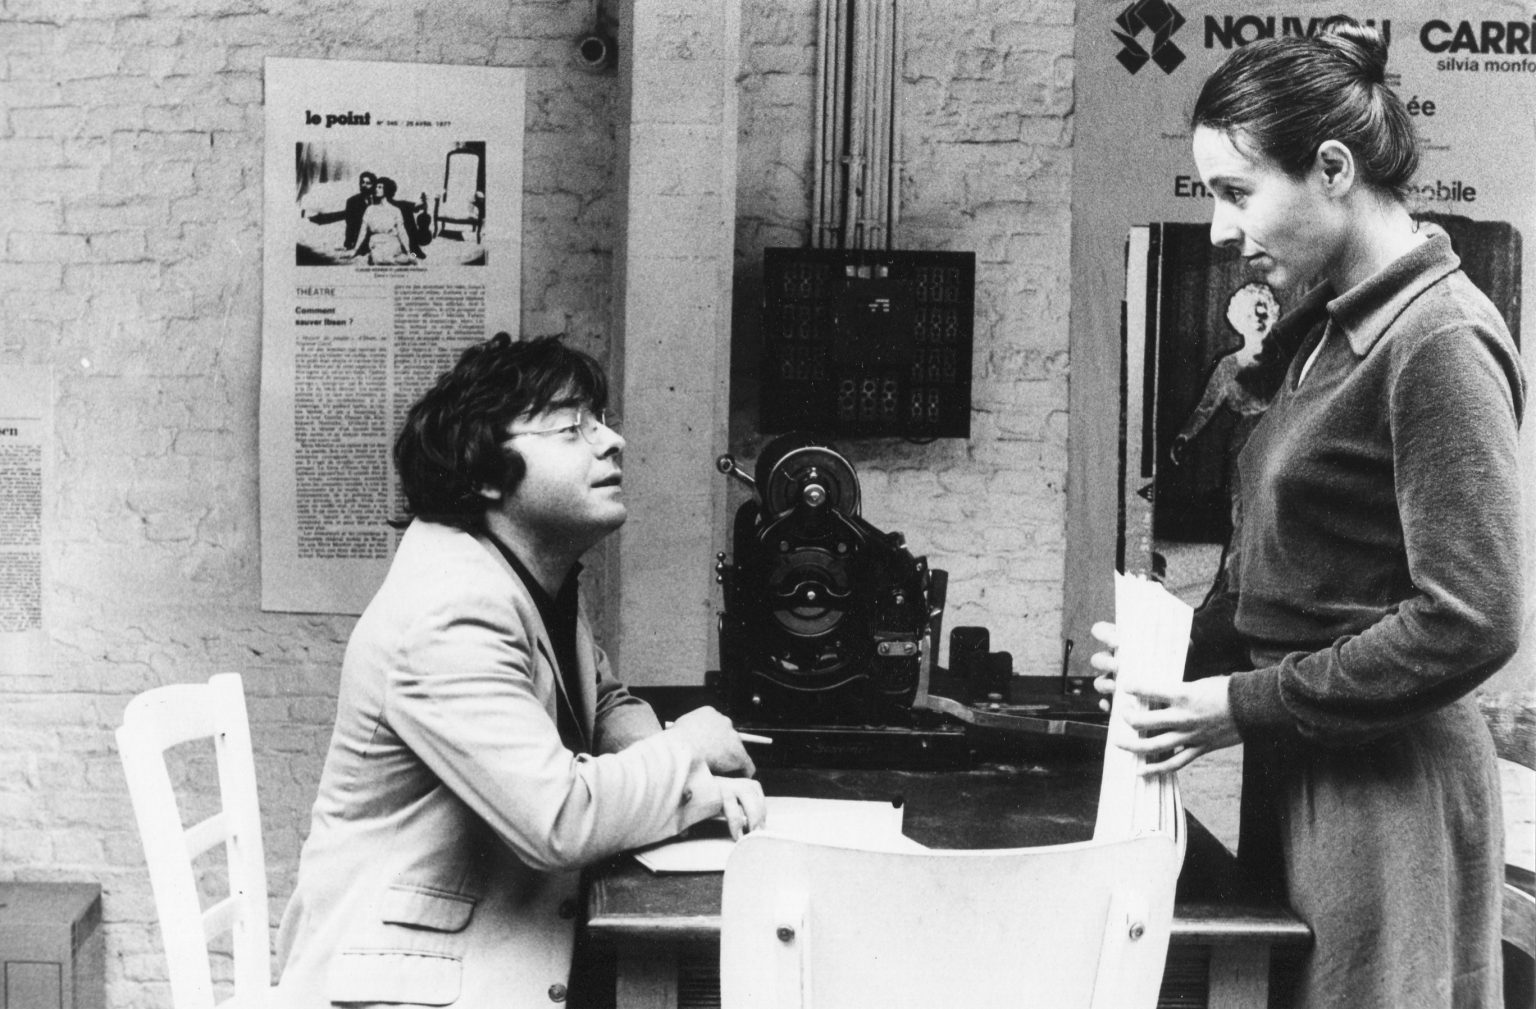 1976 - Conversations en Wallonie - Ensemble Théâtral Mobile - avec. Chantal Lempereur